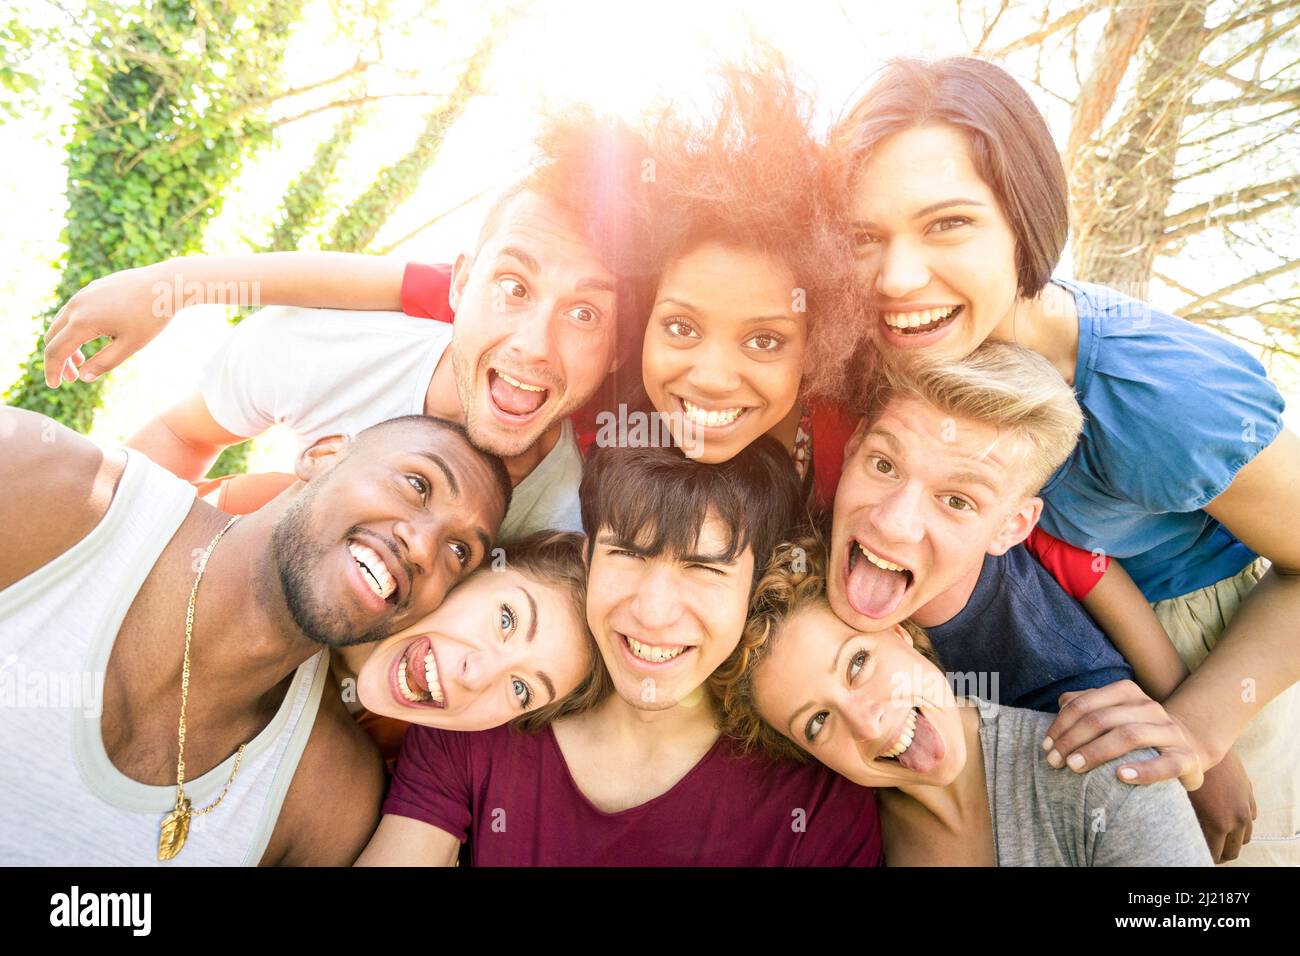 Les meilleurs amis qui prennent le selfie en plein air avec rétro-éclairage - concept de jeunesse heureux avec les jeunes qui s'amusent ensemble - concept de joie et d'amitié Banque D'Images